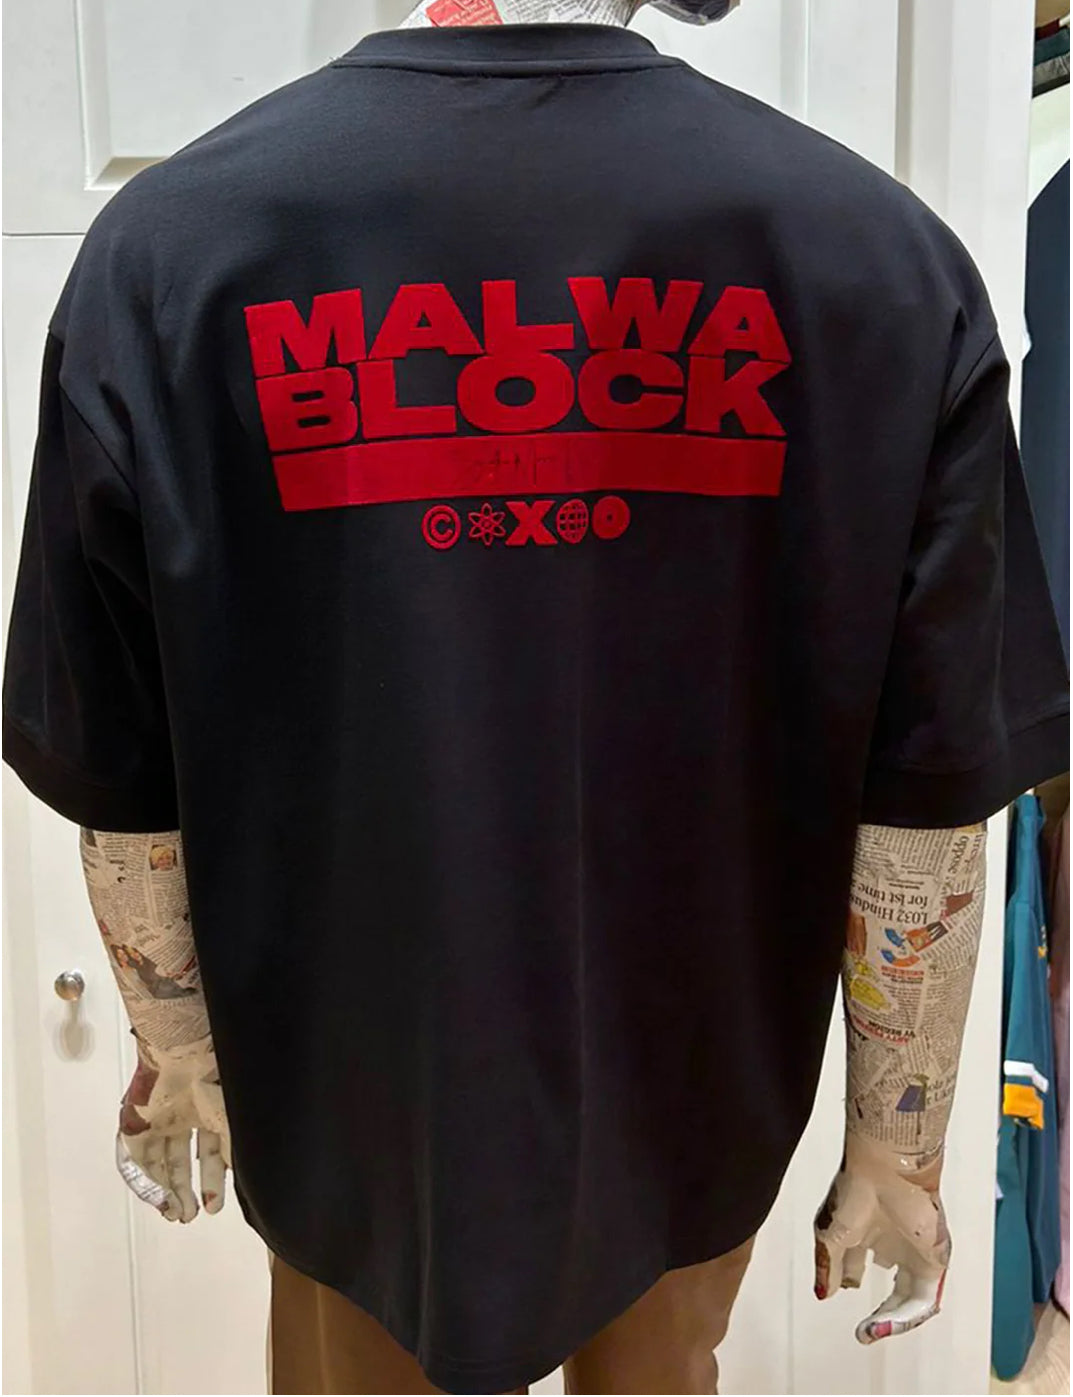 Malwa Block Sidhu Moose Wala T-Shirt